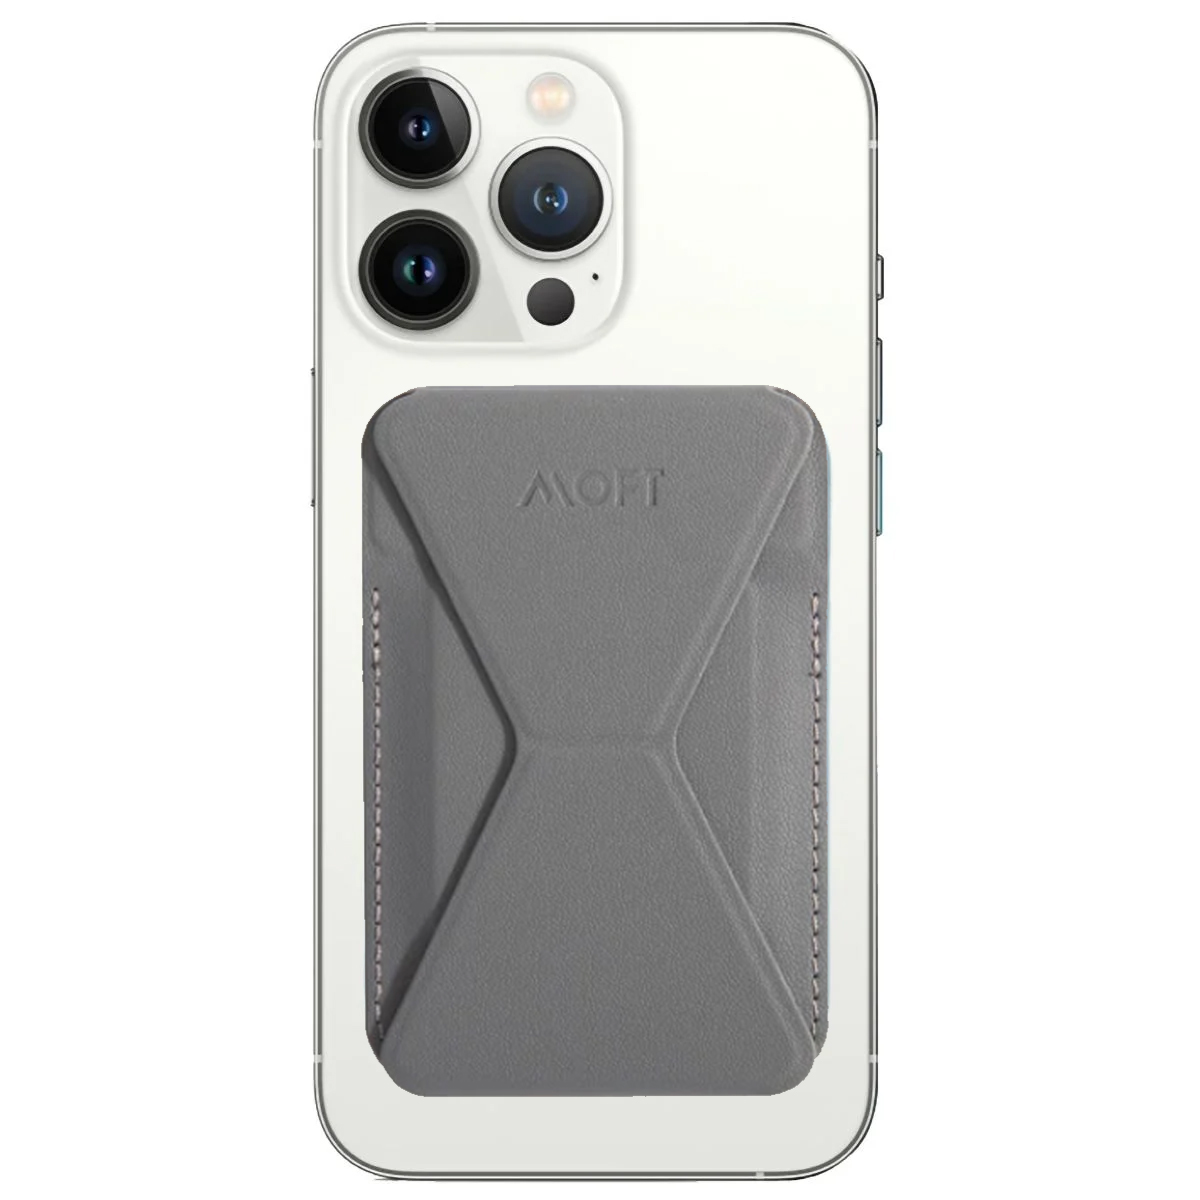 MOFT X Phone Stand – Dark Silver